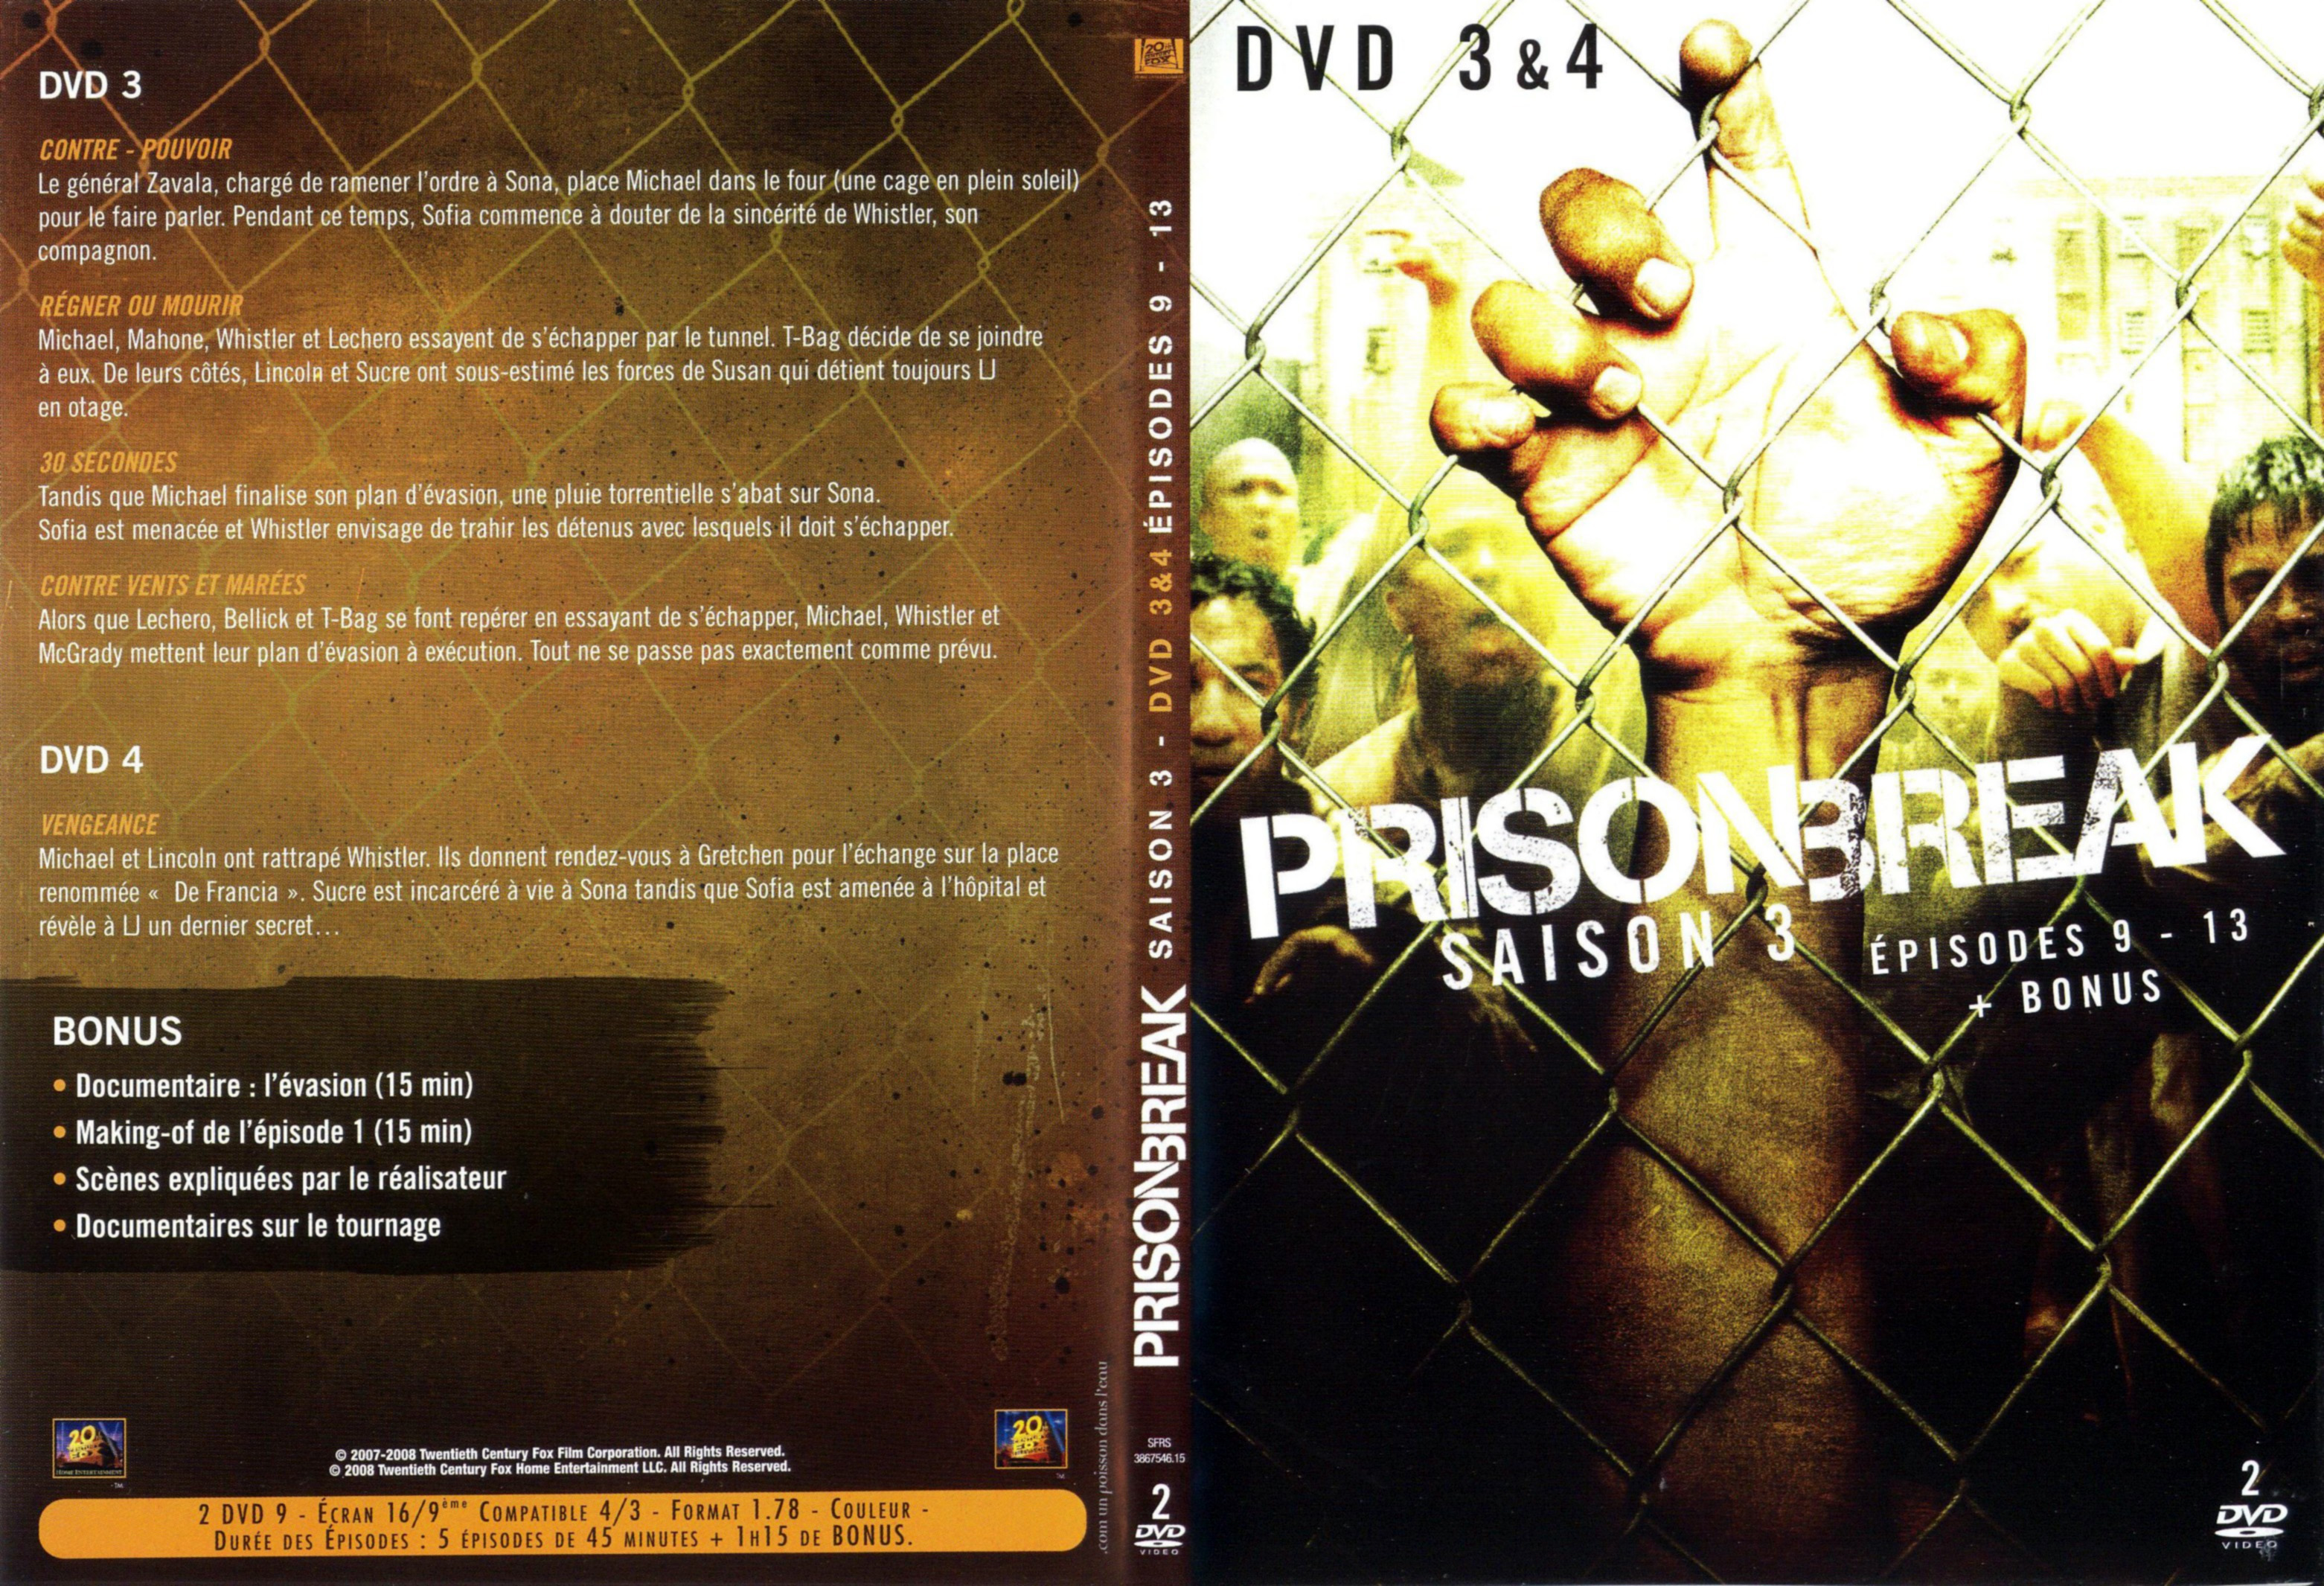 Jaquette DVD Prison break Saison 3 DVD 3